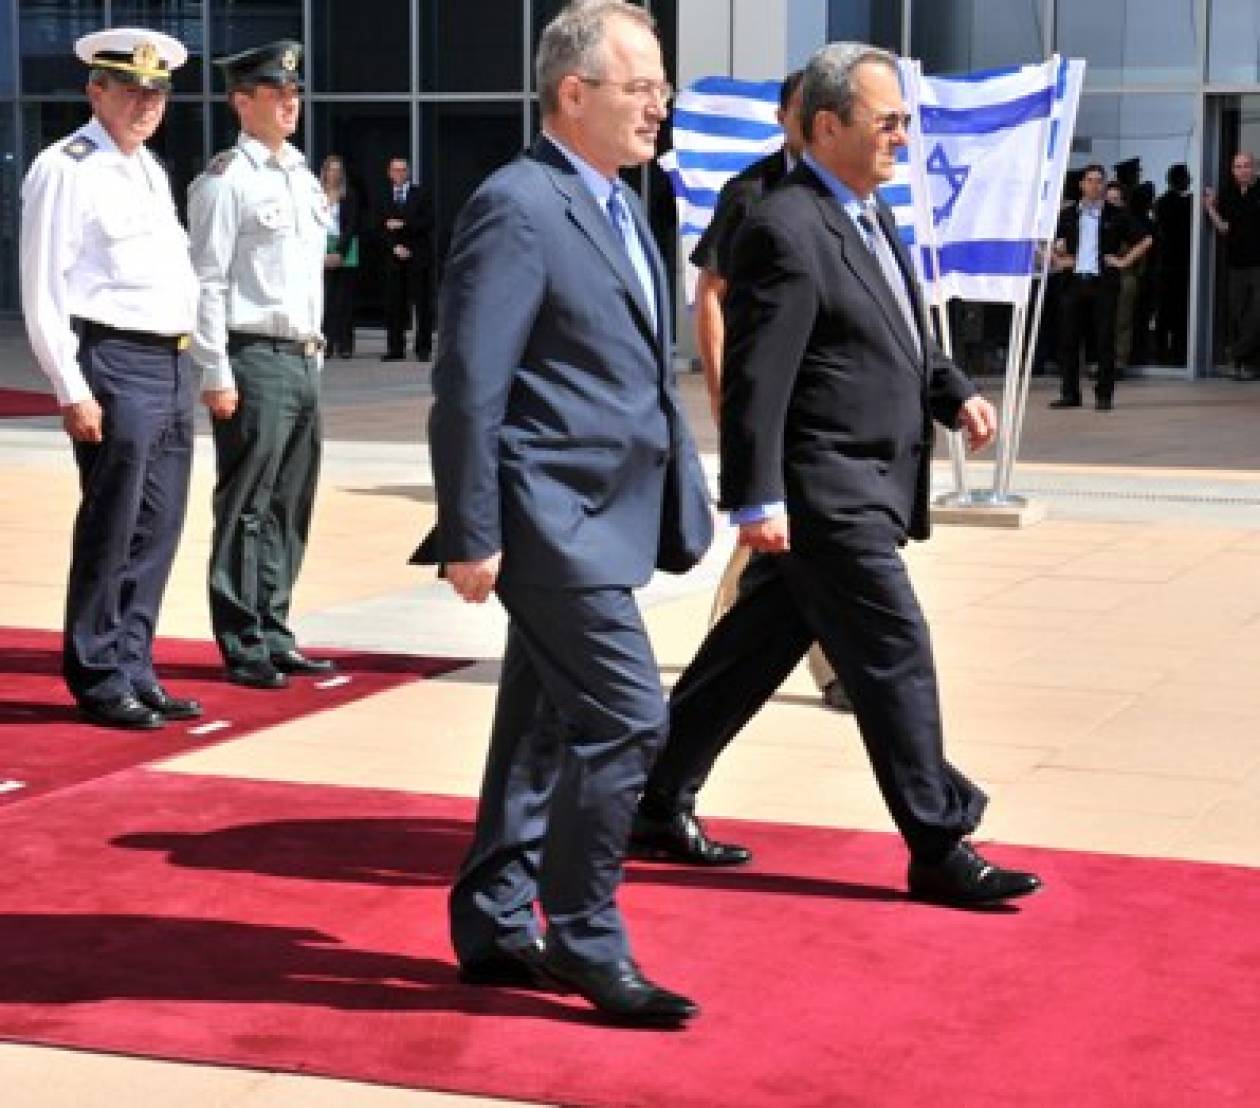 Μνημόνιο συνεργασίας για την ασφάλεια μεταξύ Ελλάδας - Ισραήλ